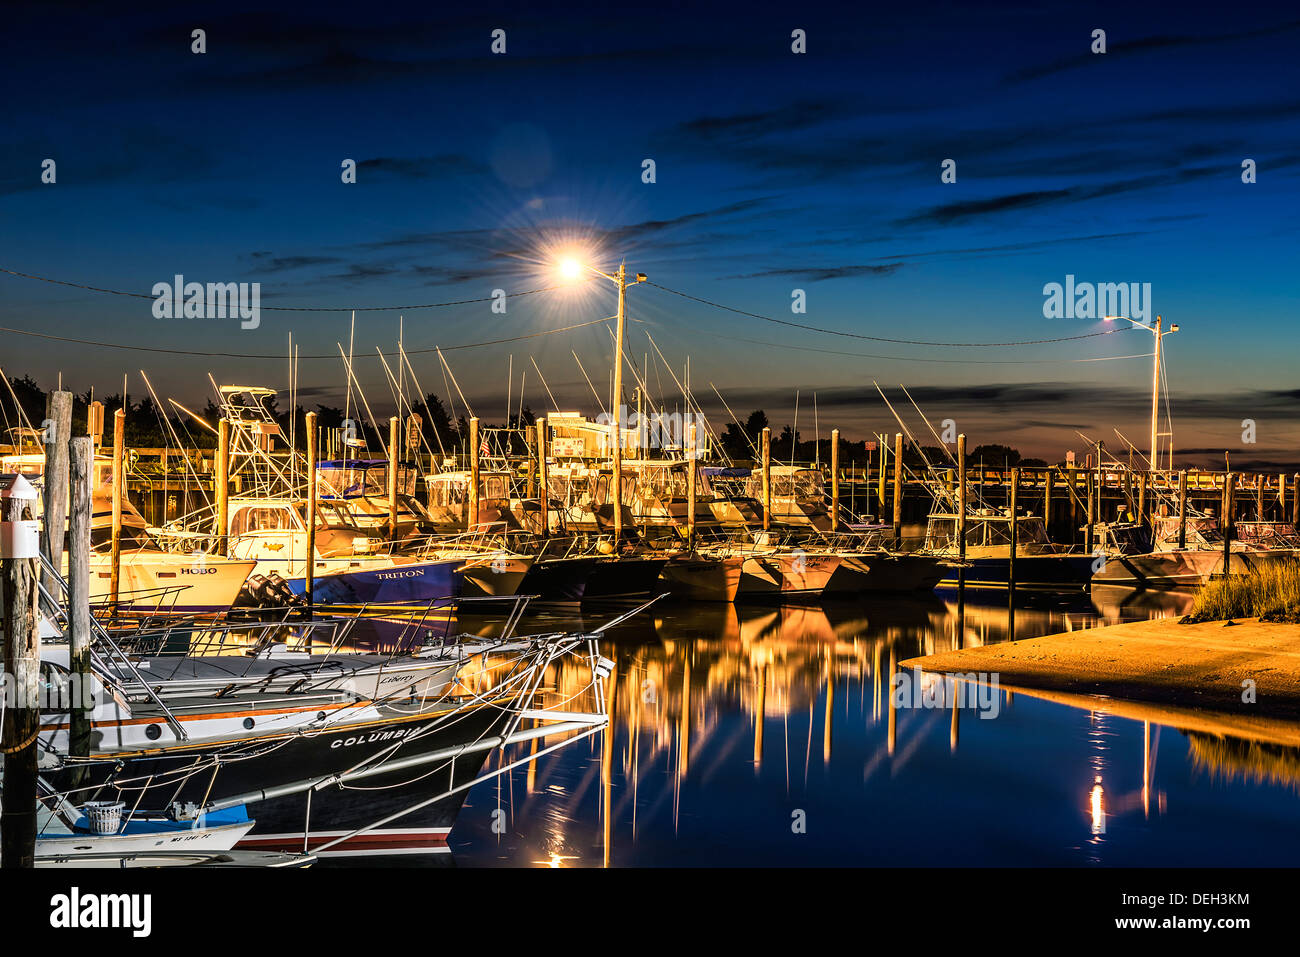 La location de bateaux de pêche à quai dans le port de roche, Orléans, Cape Cod, Massachusetts, USA Banque D'Images